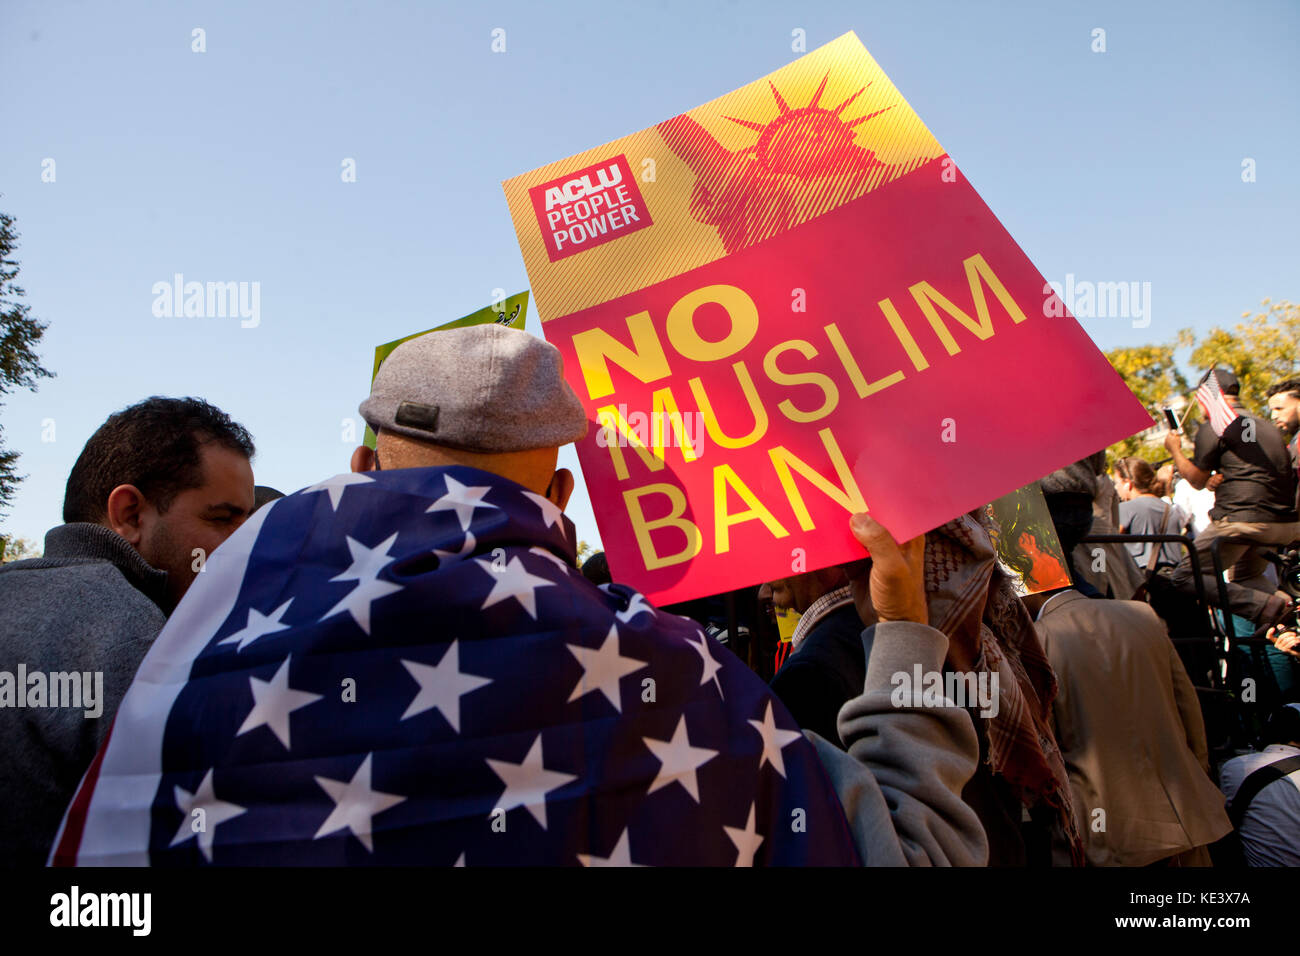 Miércoles, Octubre 18th, 2017, Washington, DC, EE.UU.: cientos de estadounidenses musulmanes y partidarios de la protesta por el triunfo de los intentos de la administración 'Mmusulmán prohibición' en la plaza Lafayette, justo afuera de la Casa Blanca. Crédito: B Christopher/Alamy Live News Foto de stock